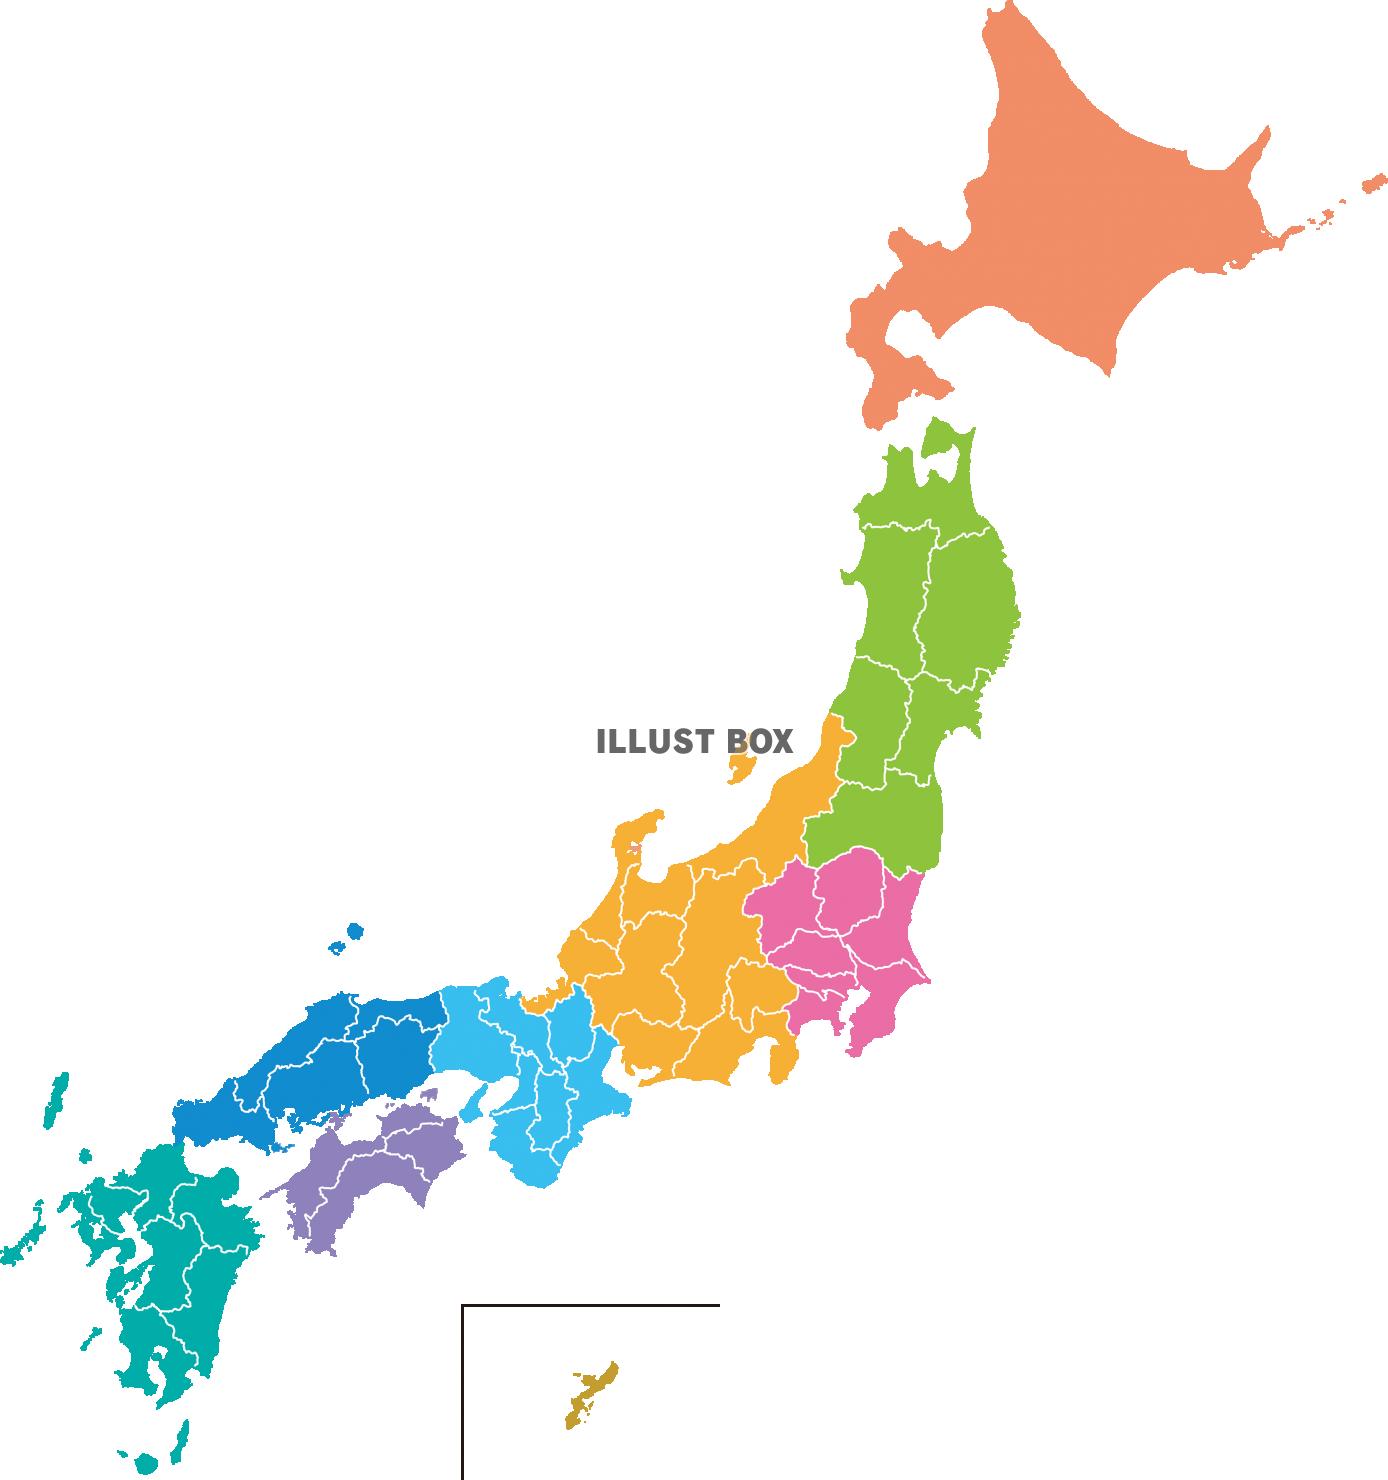 無料イラスト 日本地図 地方区分 46都道府県 境界線あり